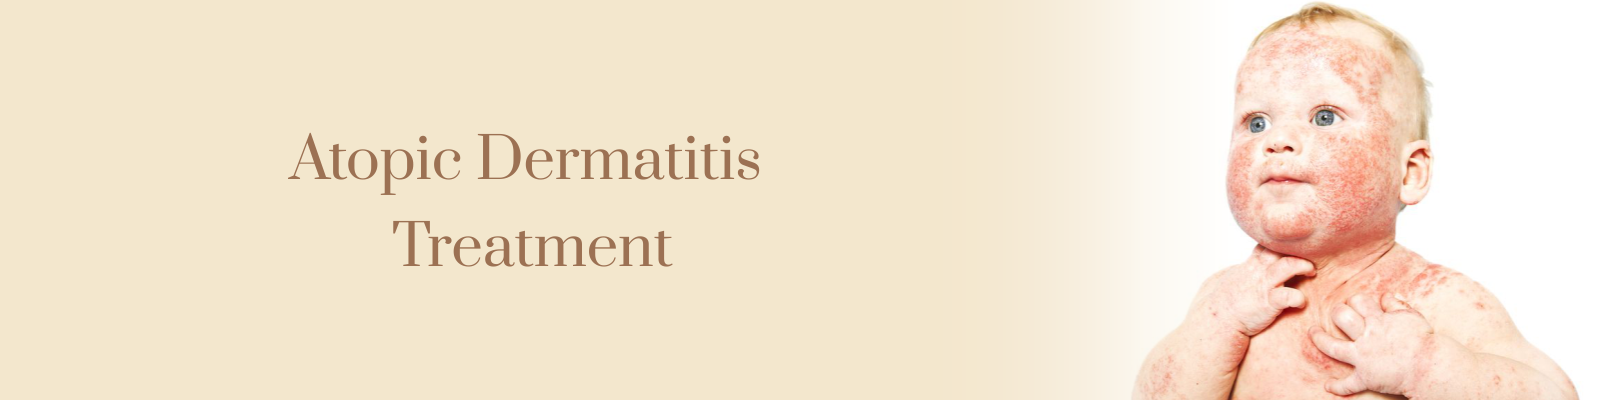 Atopic Dermatitis Treatment in Delhi